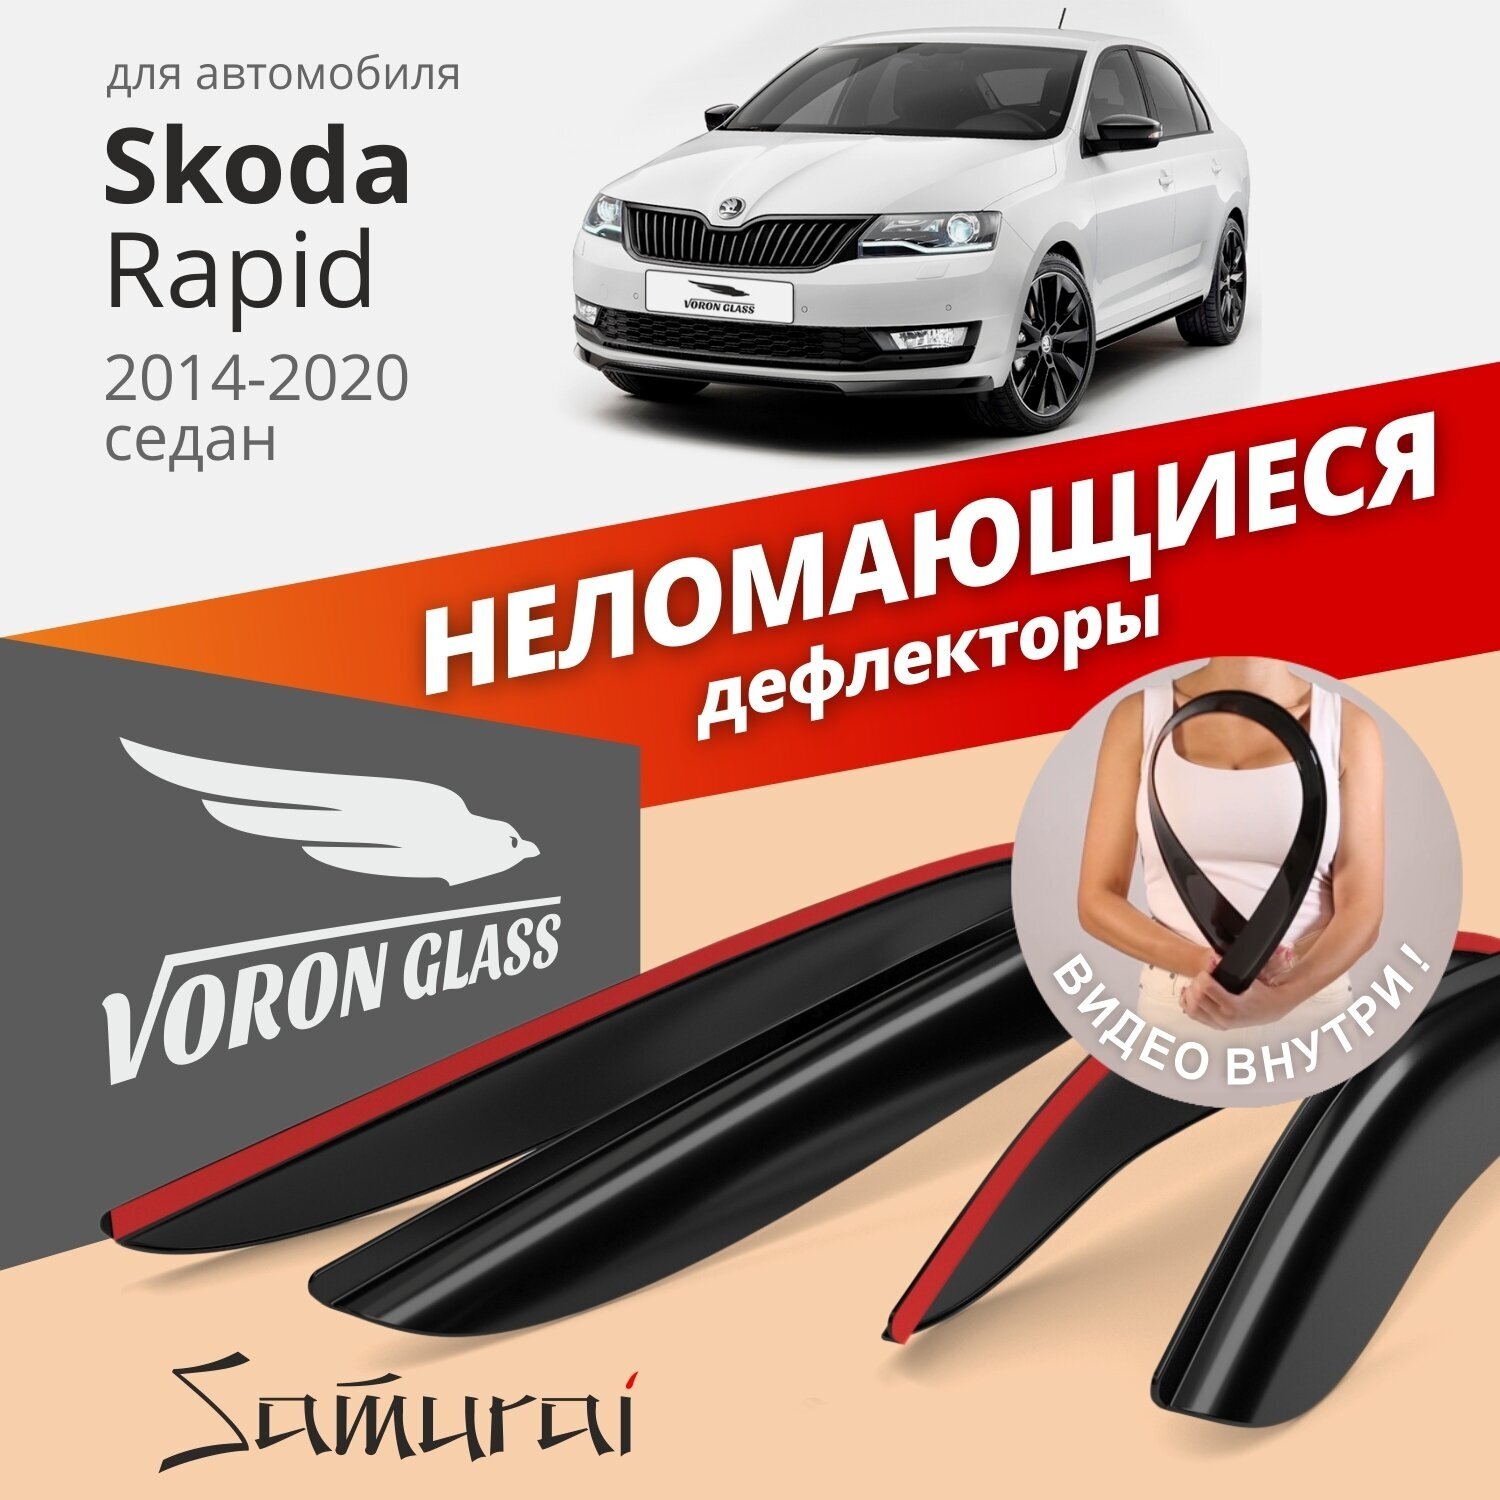 Дефлекторы окон неломающиеся Voron Glass серия Samurai для Skoda Rapid 2014-2020 седан накладные 4 шт.